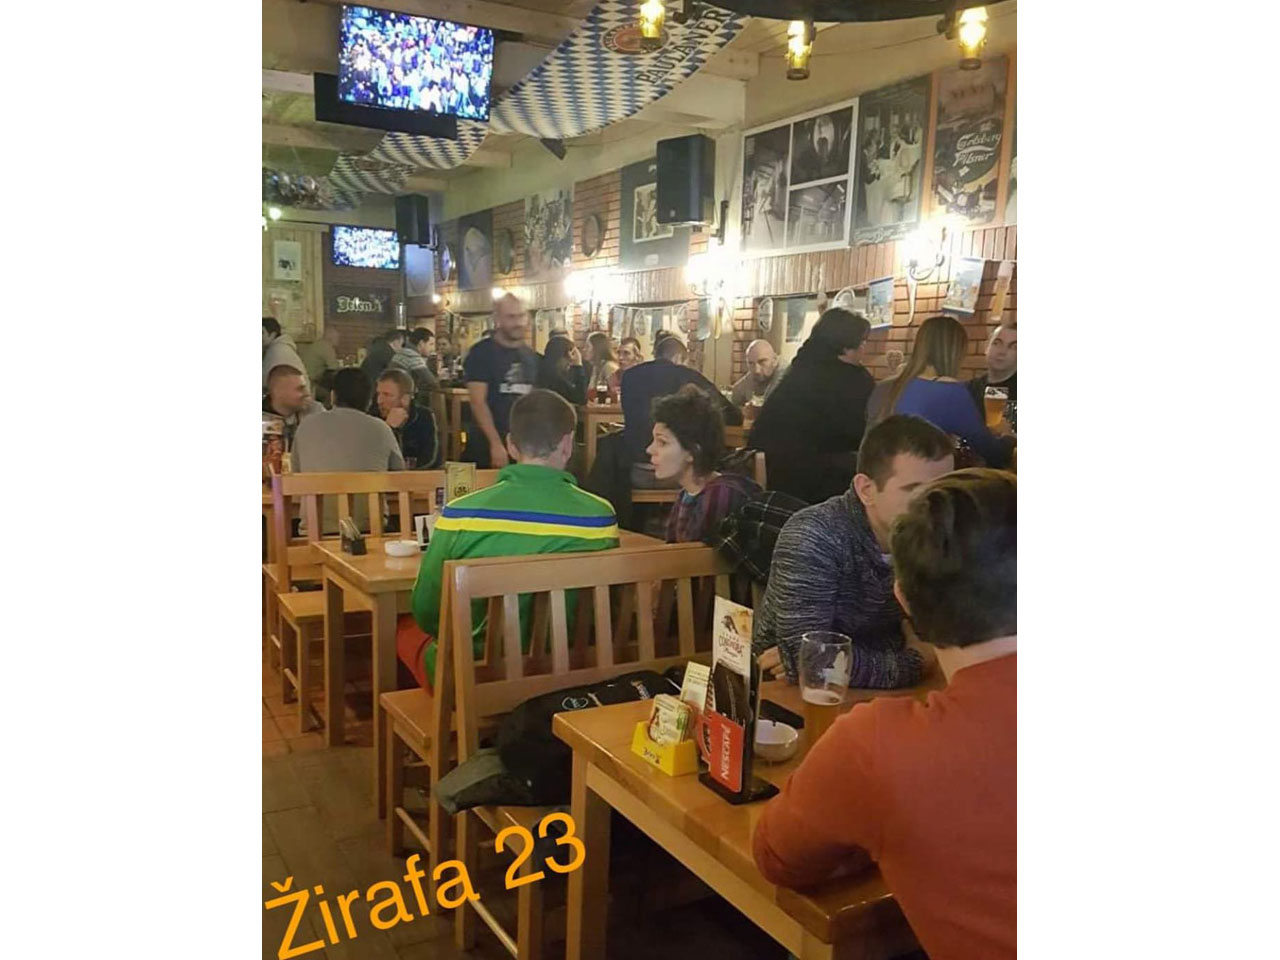 ZIRAFA PUB 23 Pubs Beograd